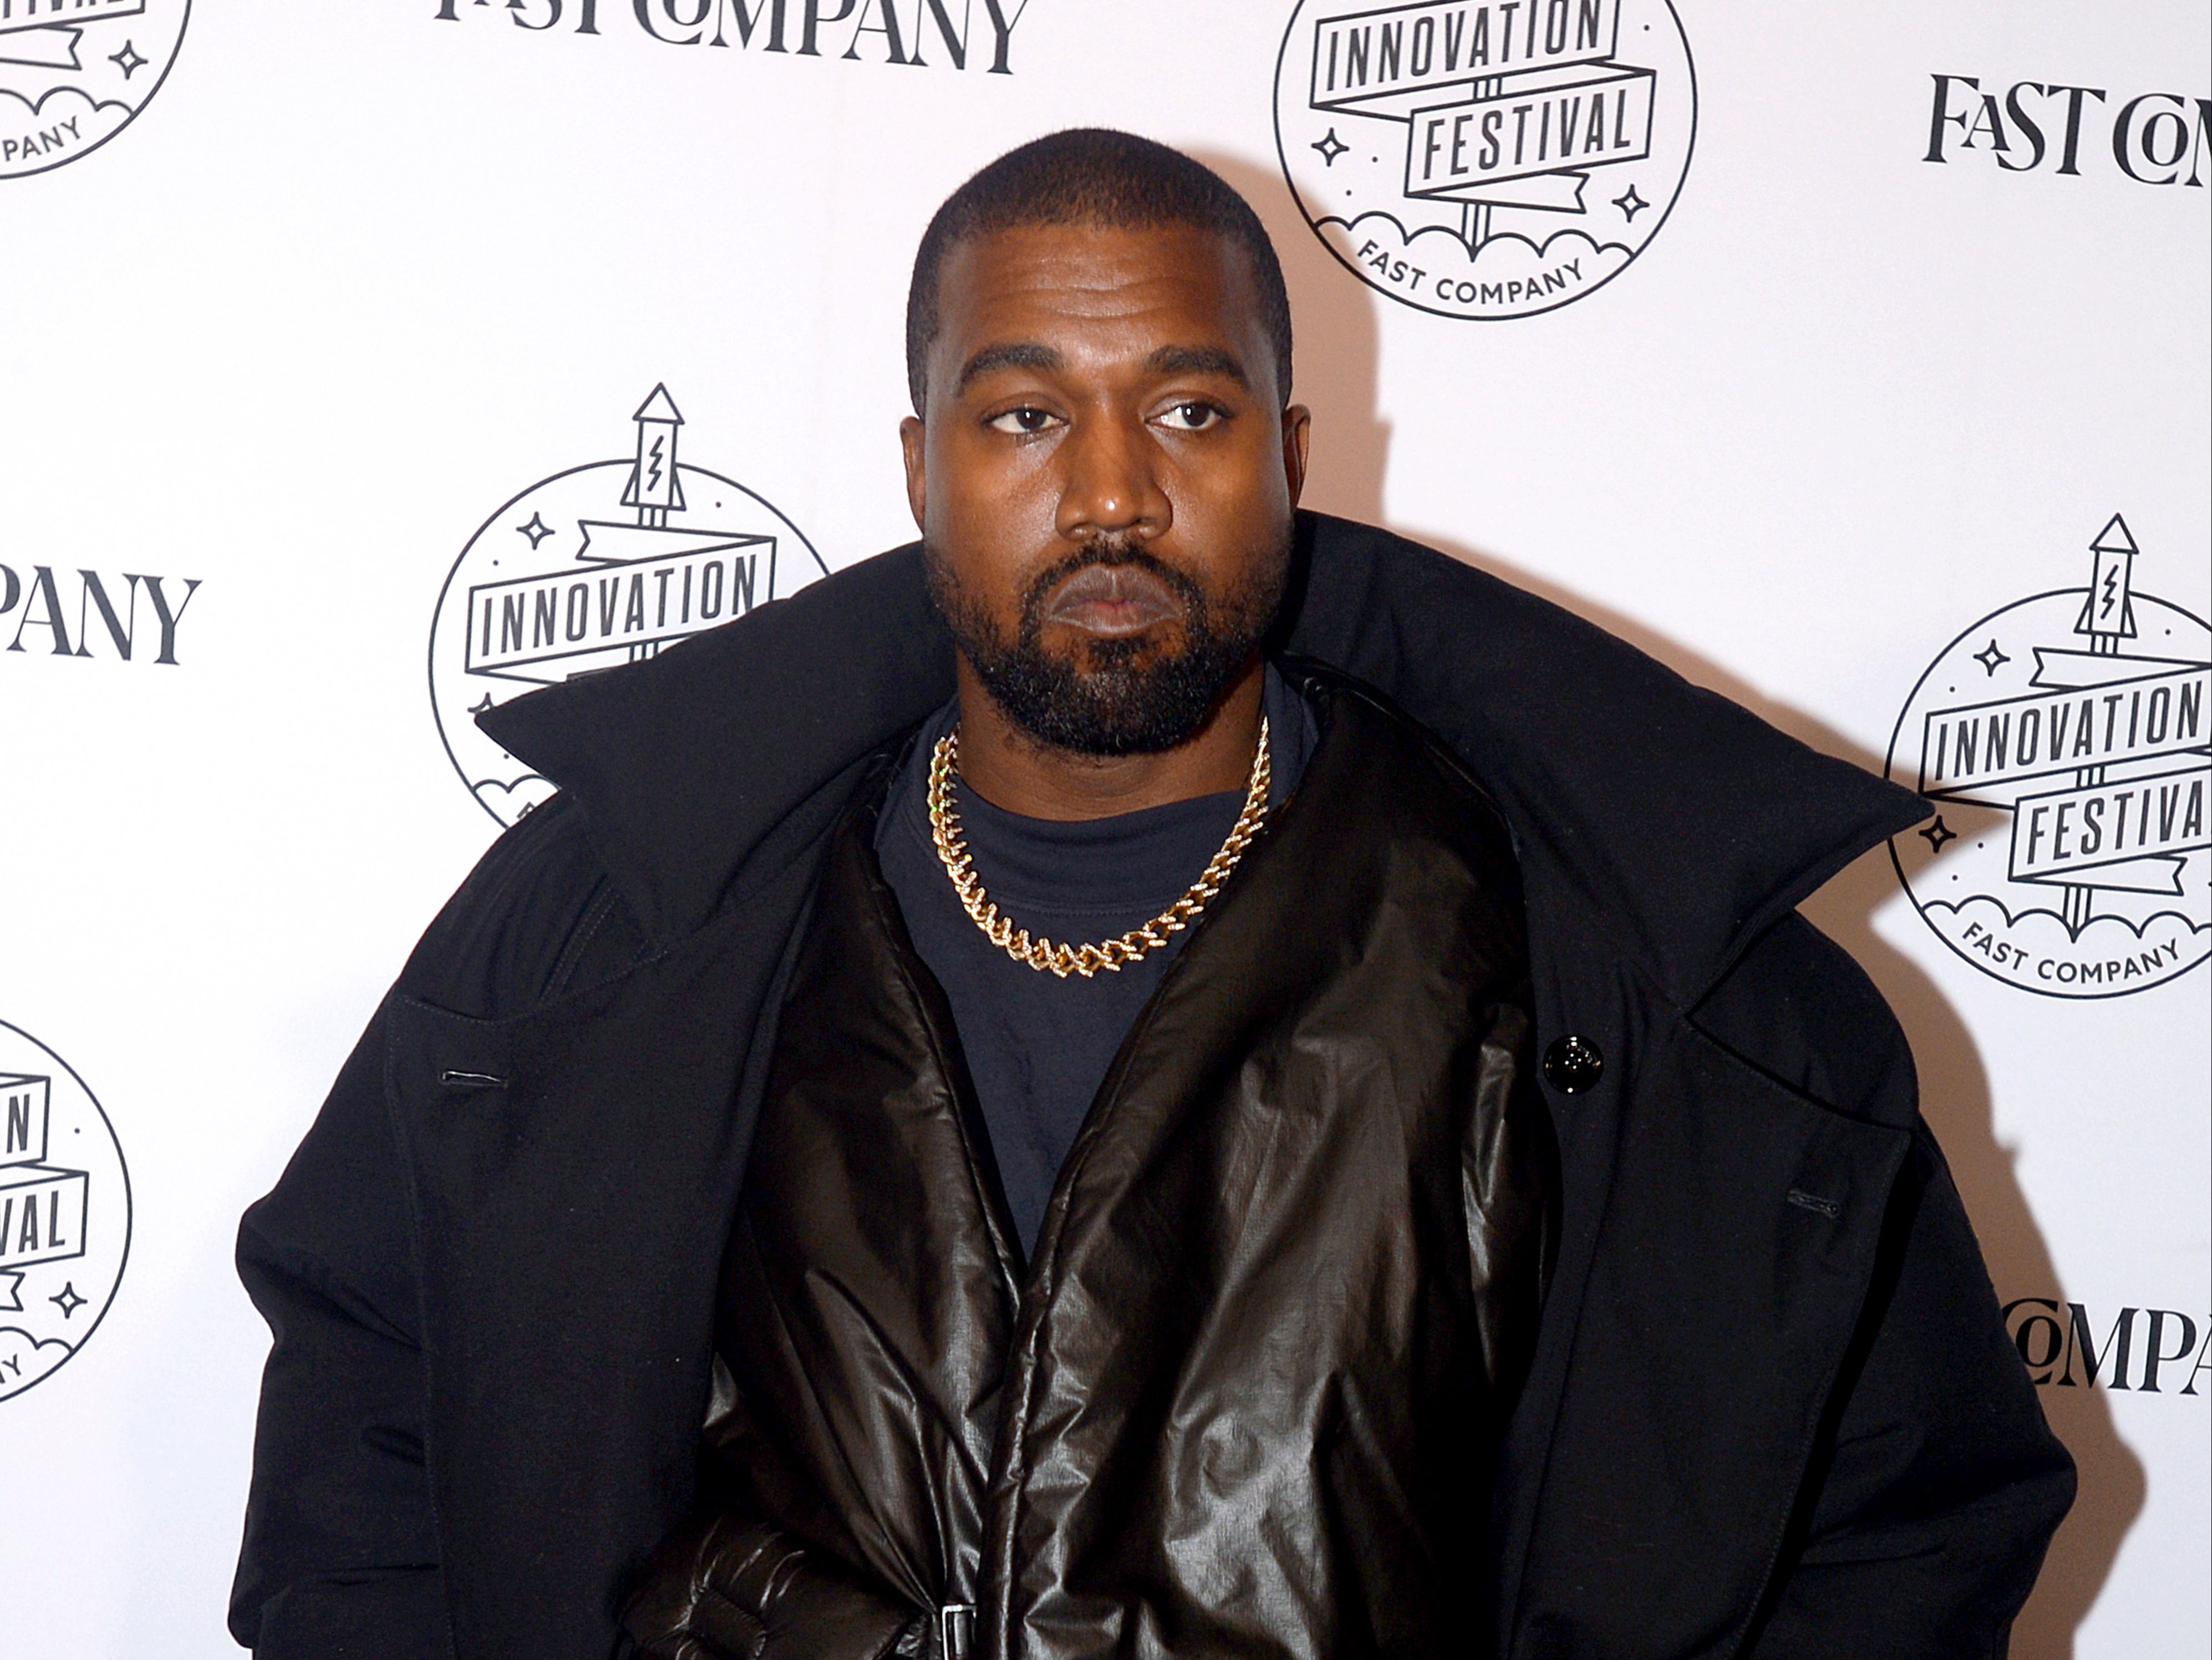 mekanisk skarpt Jeg accepterer det Kanye West loses billionaire status after Adidas ends Yeezy partnership,  according to Forbes | The Independent